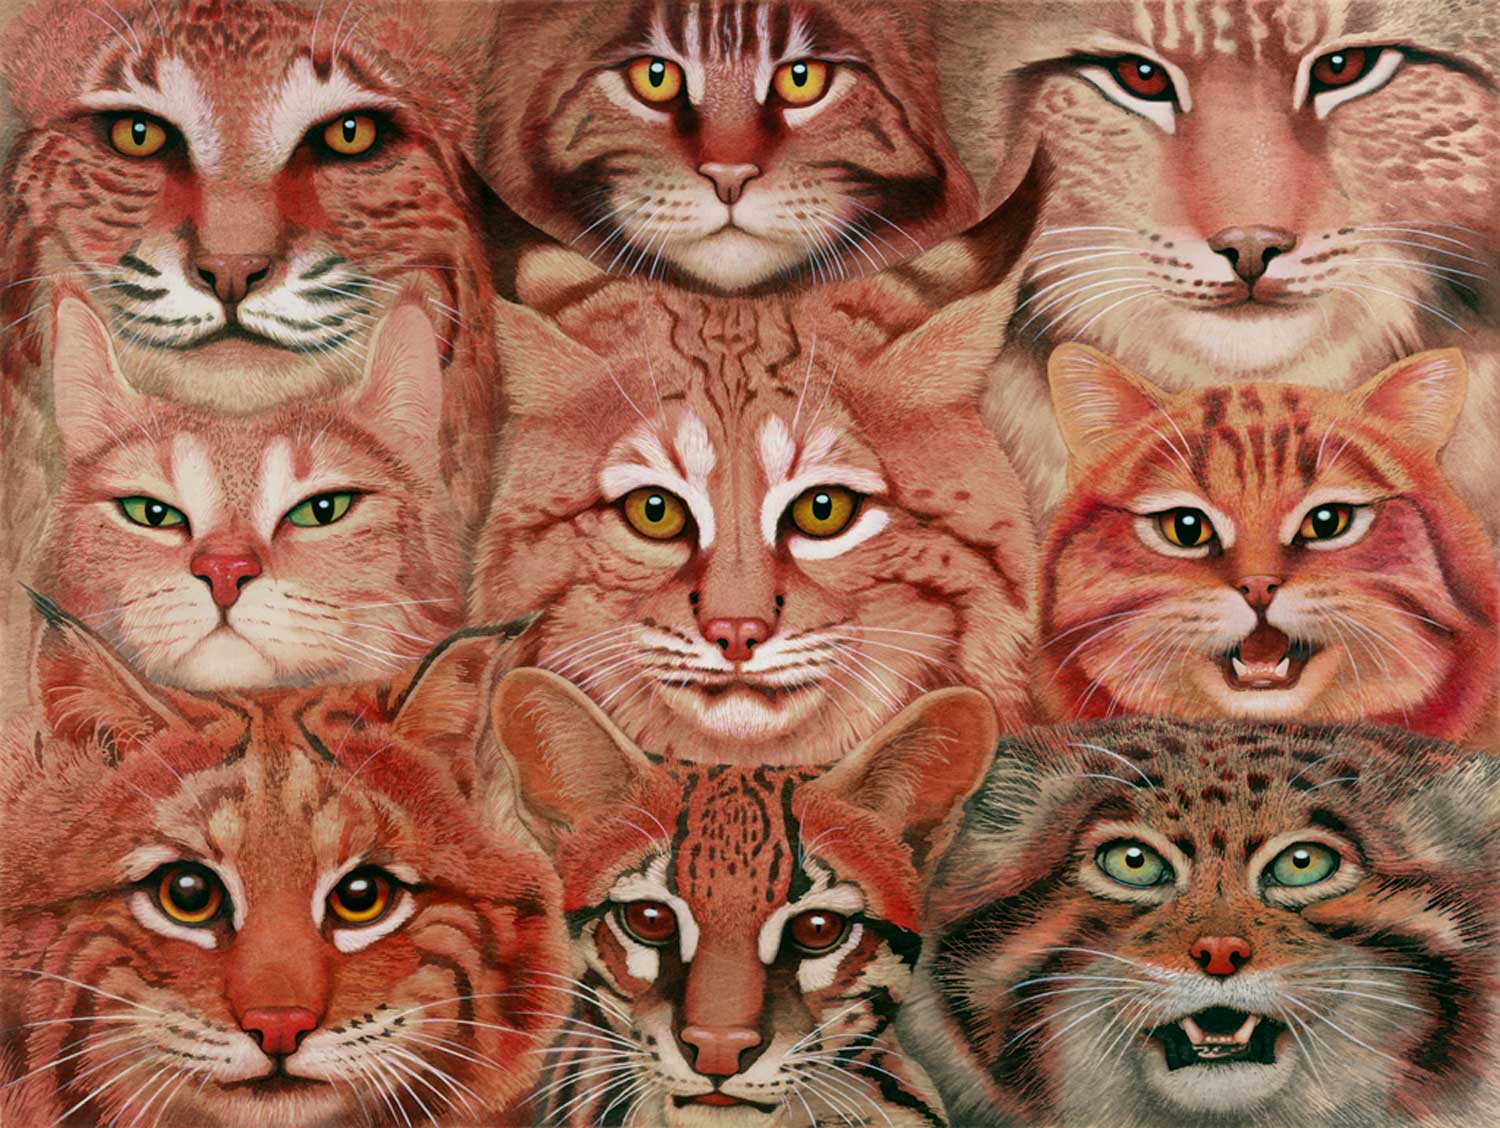 tiffany bozic surreal animals cats